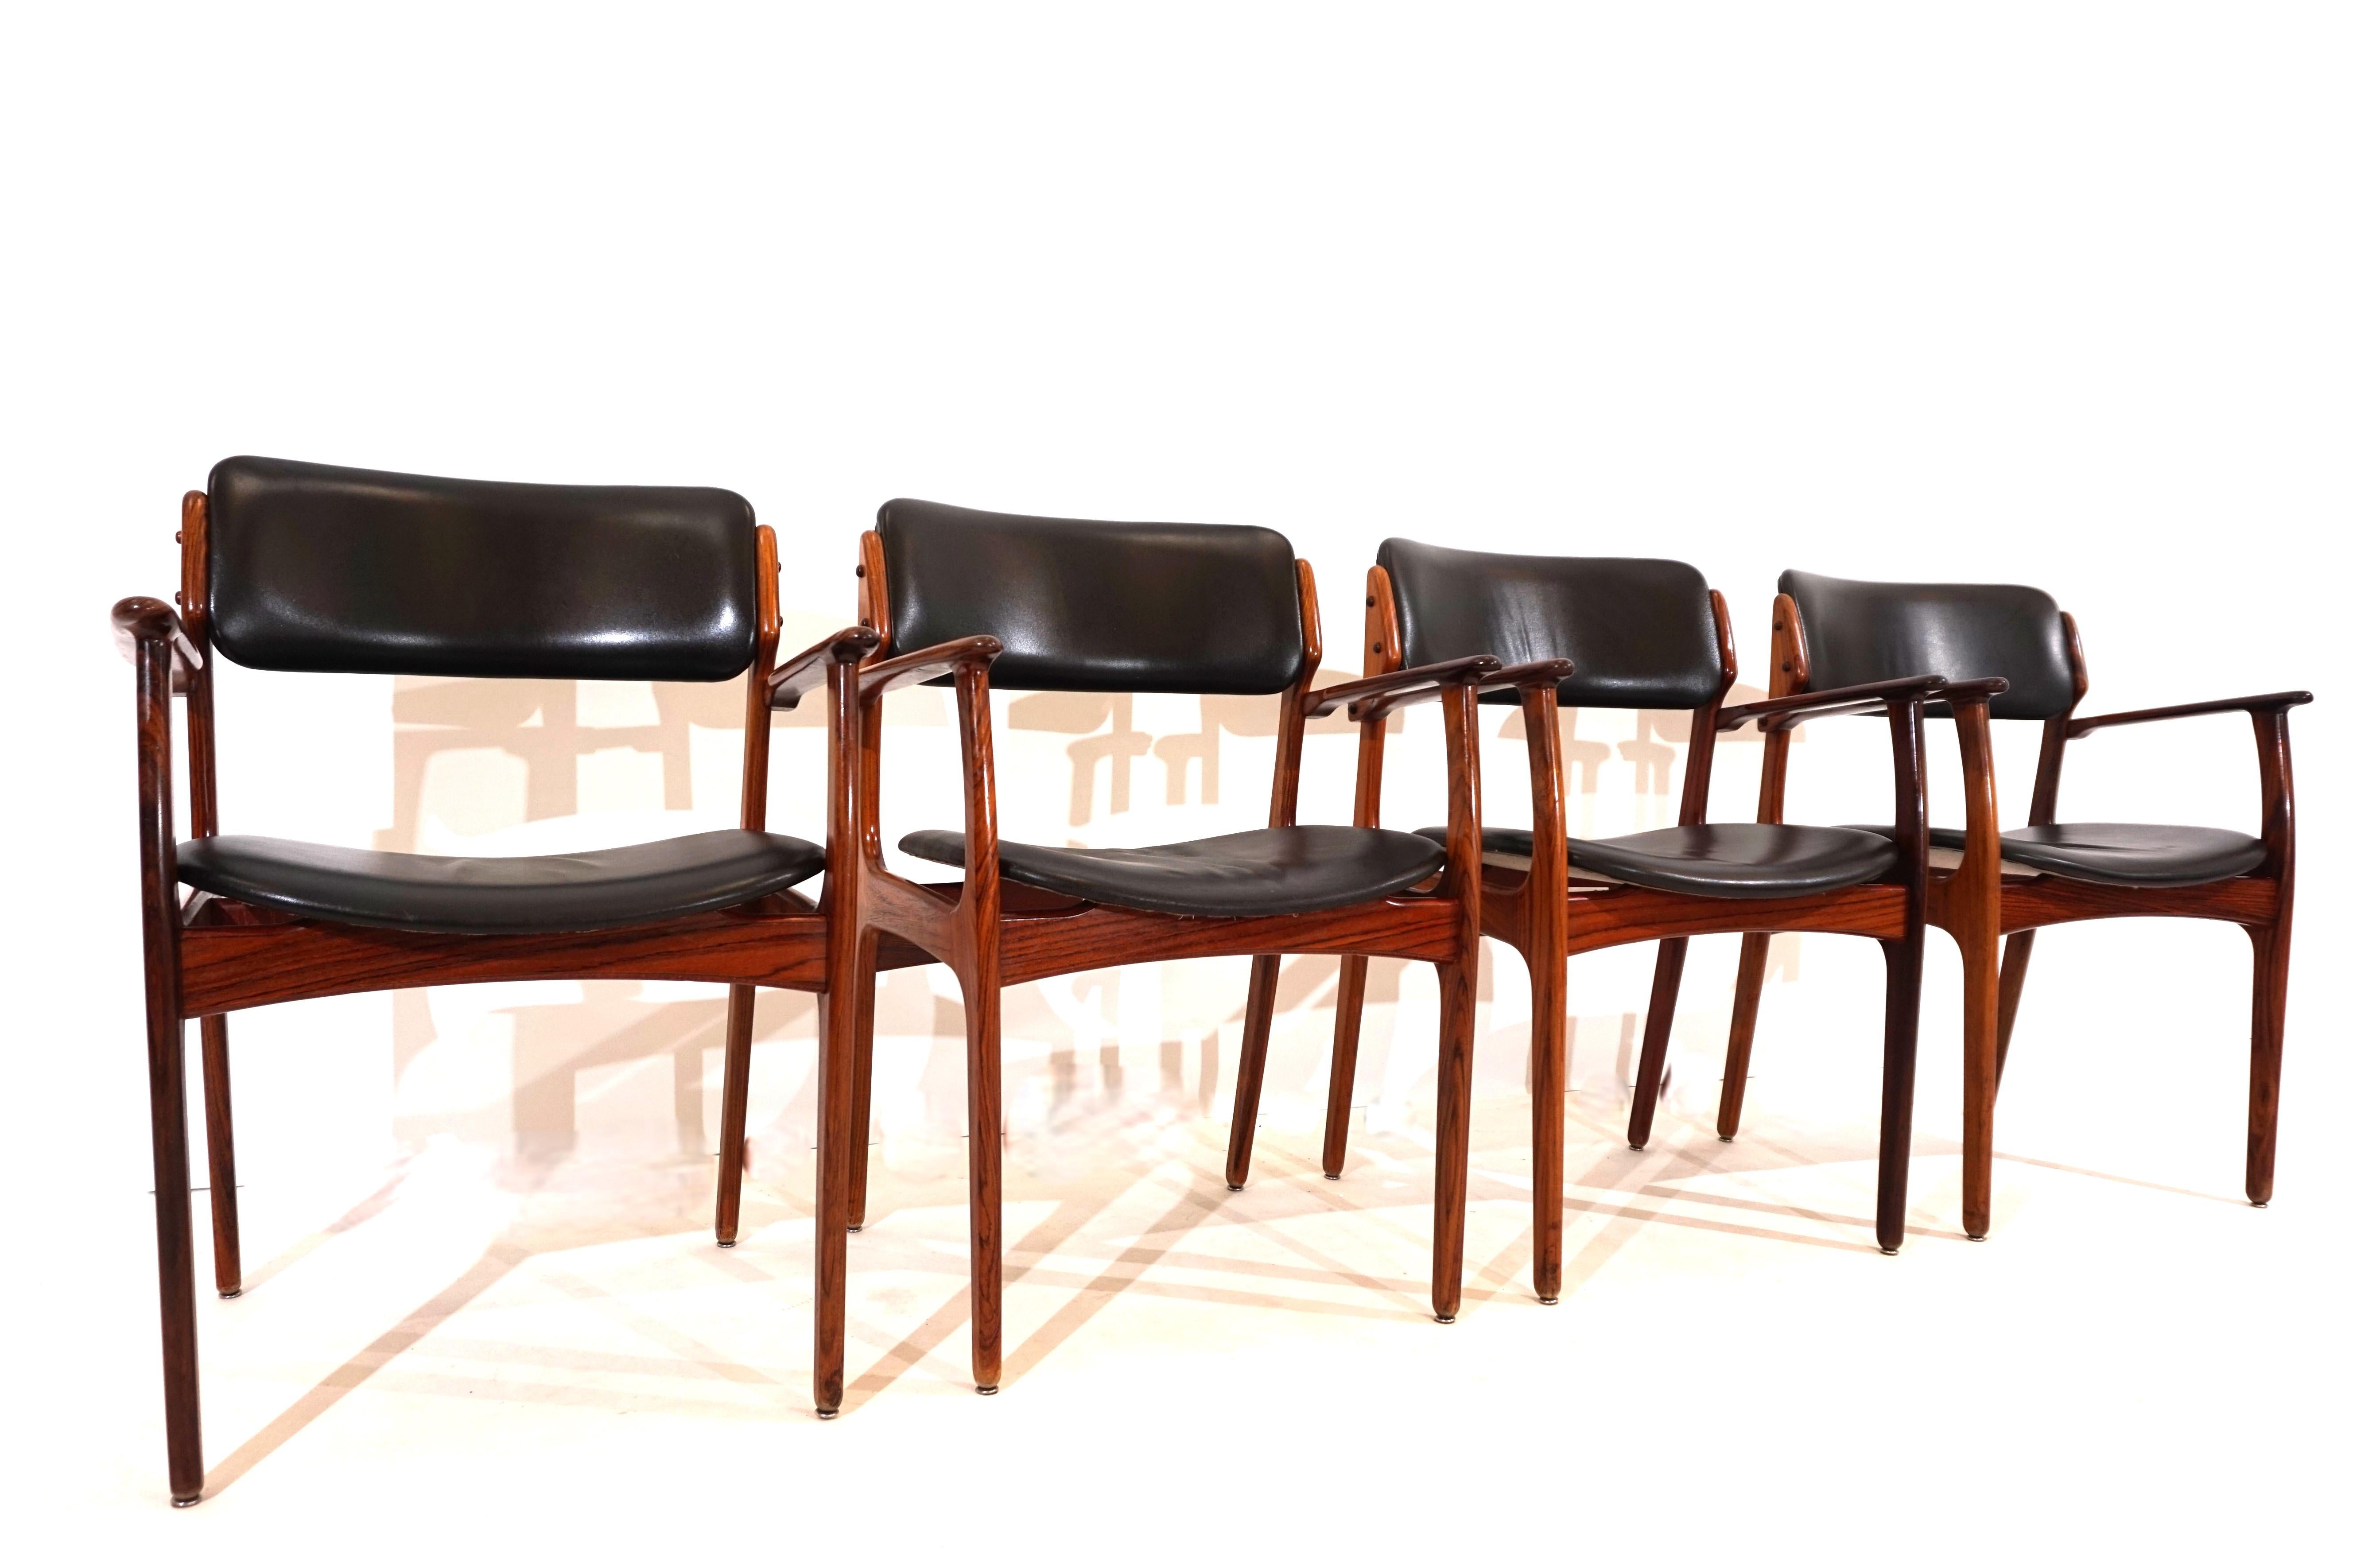 Dieser Satz von vier OD 50 Esszimmerstühlen ist in hervorragendem Originalzustand. Die Palisanderrahmen mit einer sehr attraktiven Maserung weisen nur minimale Gebrauchsspuren auf. Der schwarze Skai-Lederbezug der Sessel weist nur an einem der